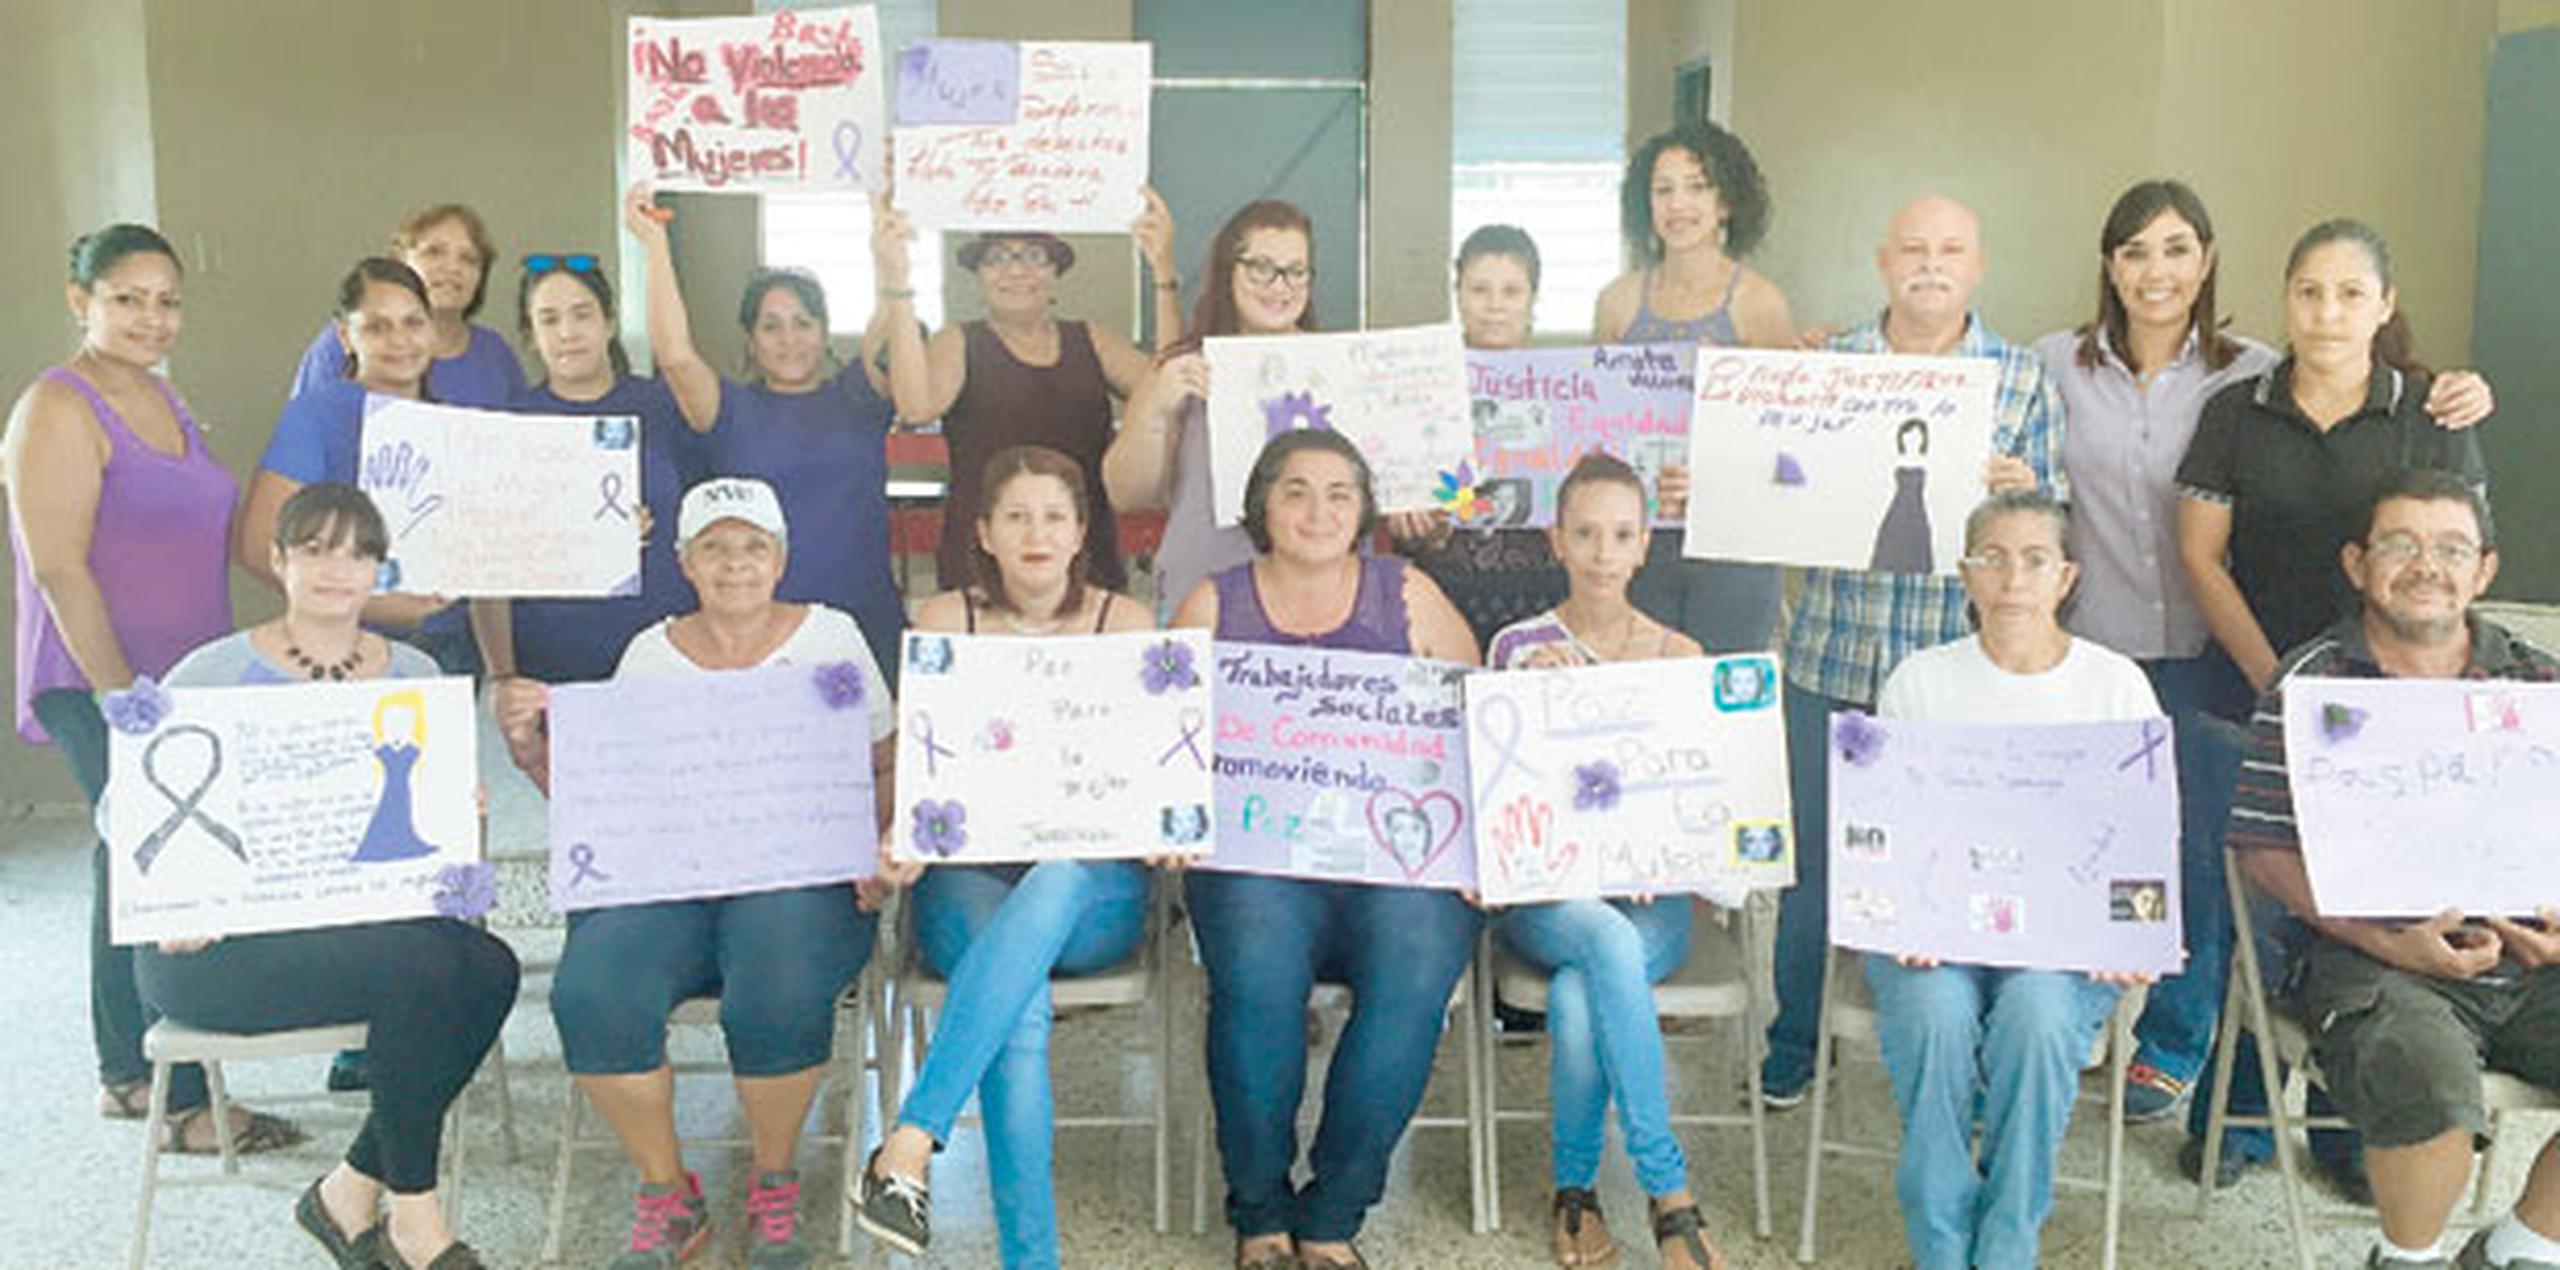 Residentes en el barrio Santo Domingo en Peñuelas, prepararon carteles para llevar sus mensajes particulares contra la violencia de género. (Suministrada)